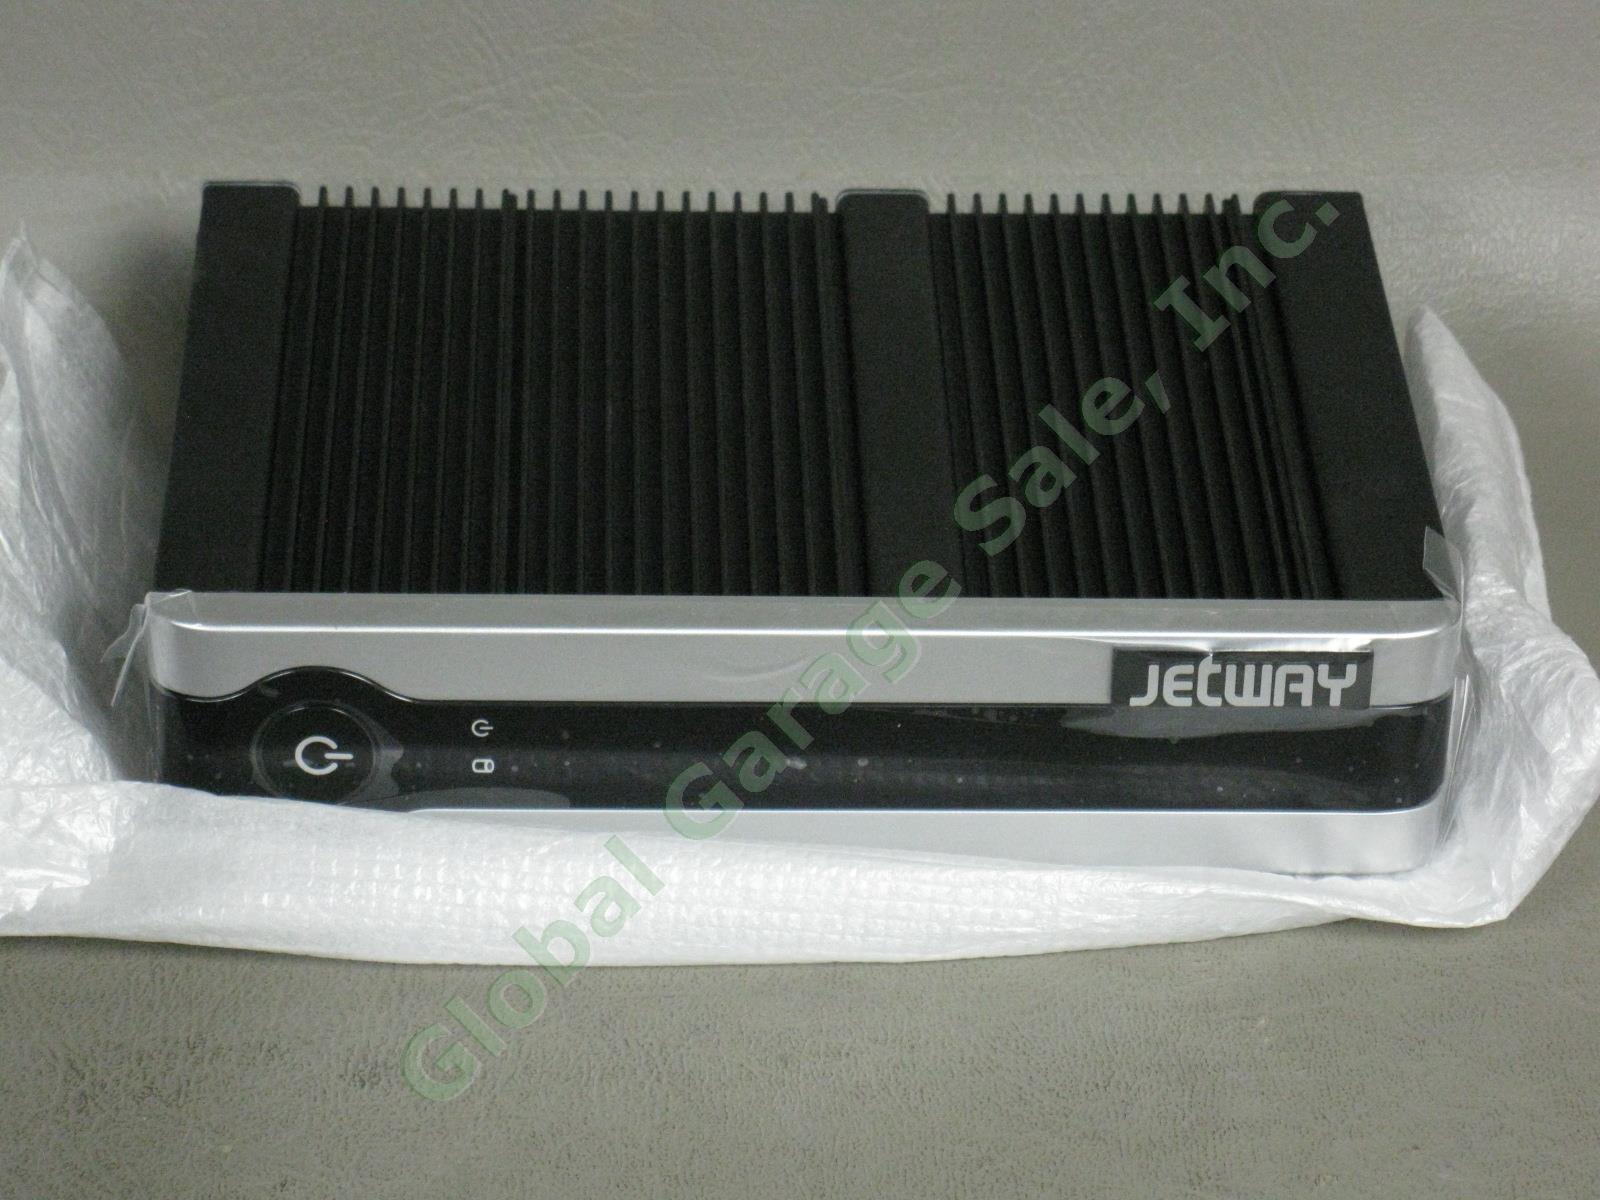 NEW Jetway HBJC362F36W-2600-B Mini-ITX Computer Intel Atom Dual Core 1.6GHz CPU 1